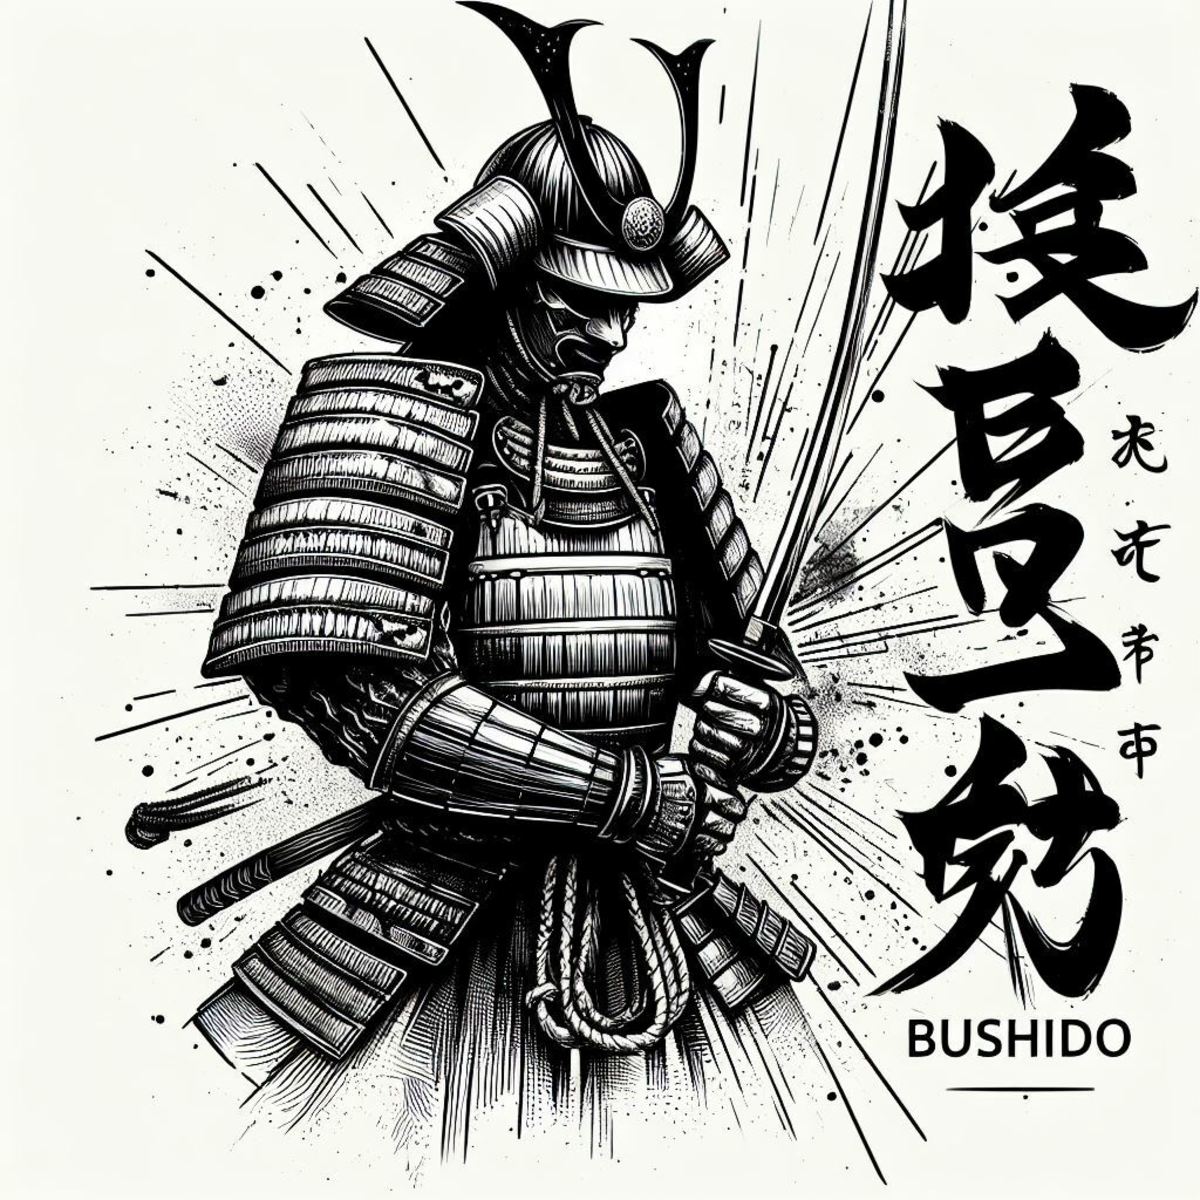 What is Bushido?